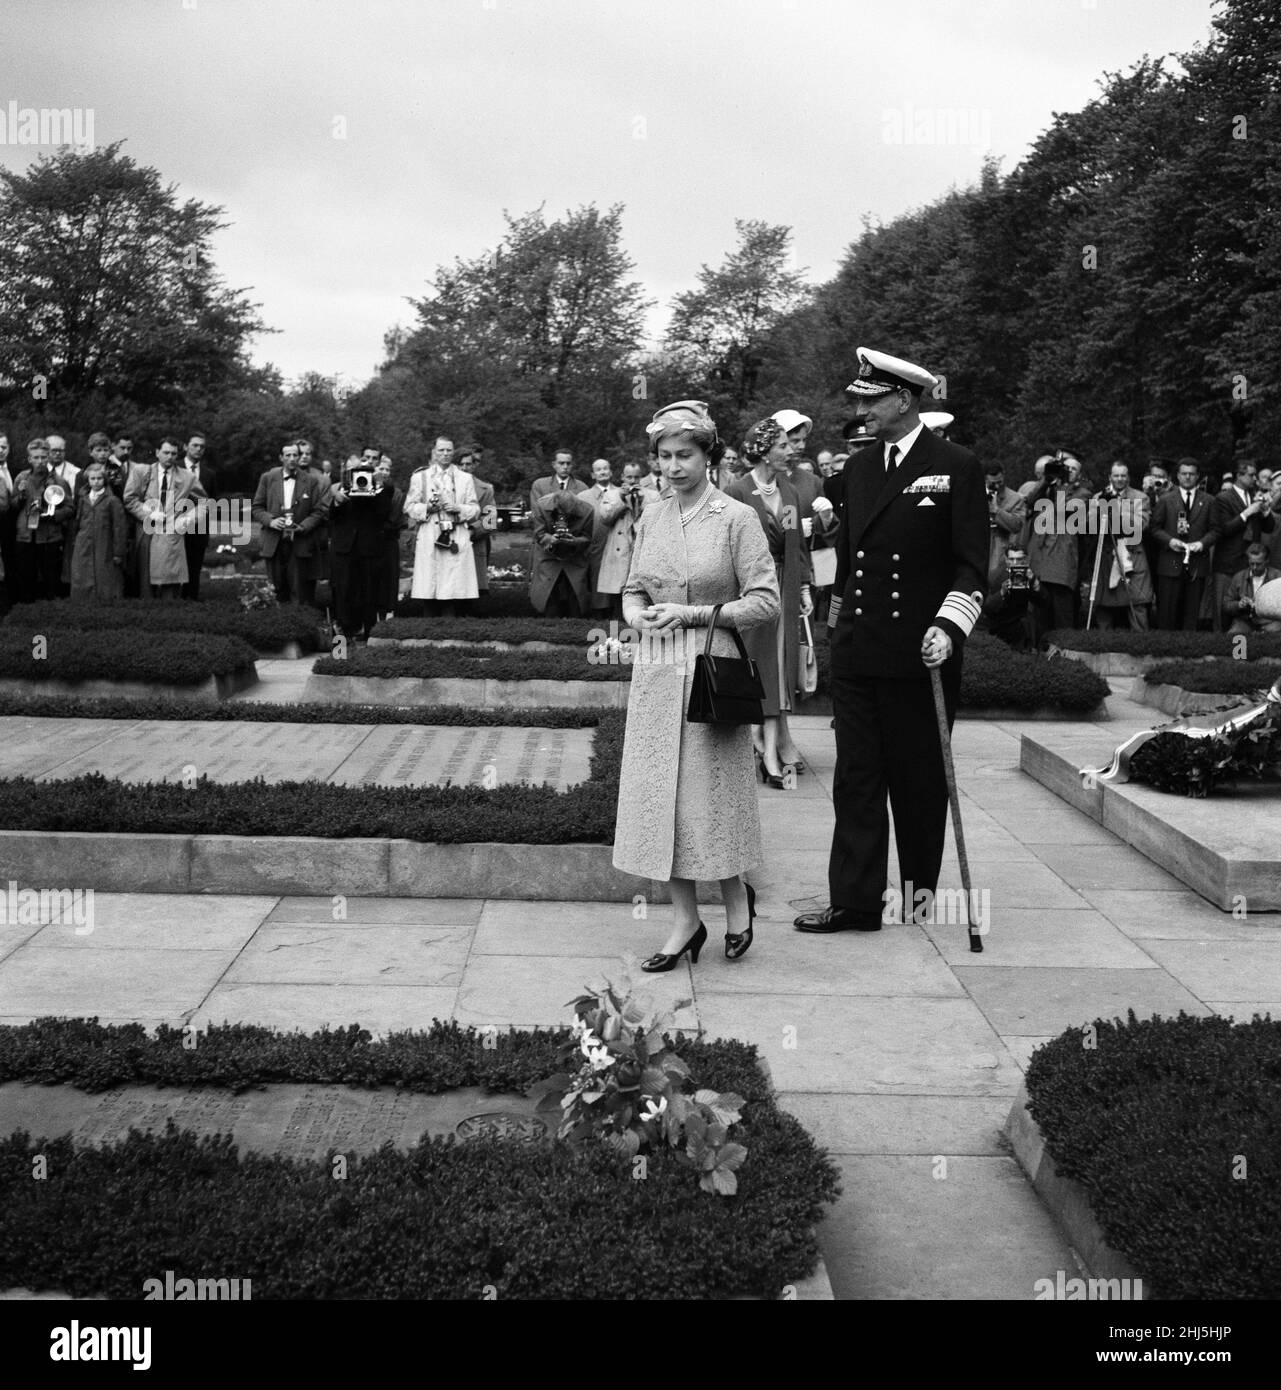 Visite de la reine Elizabeth II et du prince Philip, duc d'Édimbourg au Danemark.La reine Elizabeth II et le roi Frederik IX du Danemark photographiés lors d'une visite du cimetière du souvenir au mouvement de résistance.Derrière eux se trouvent la reine Ingrid et la princesse danoise Margrethe.23rd mai 1957. Banque D'Images